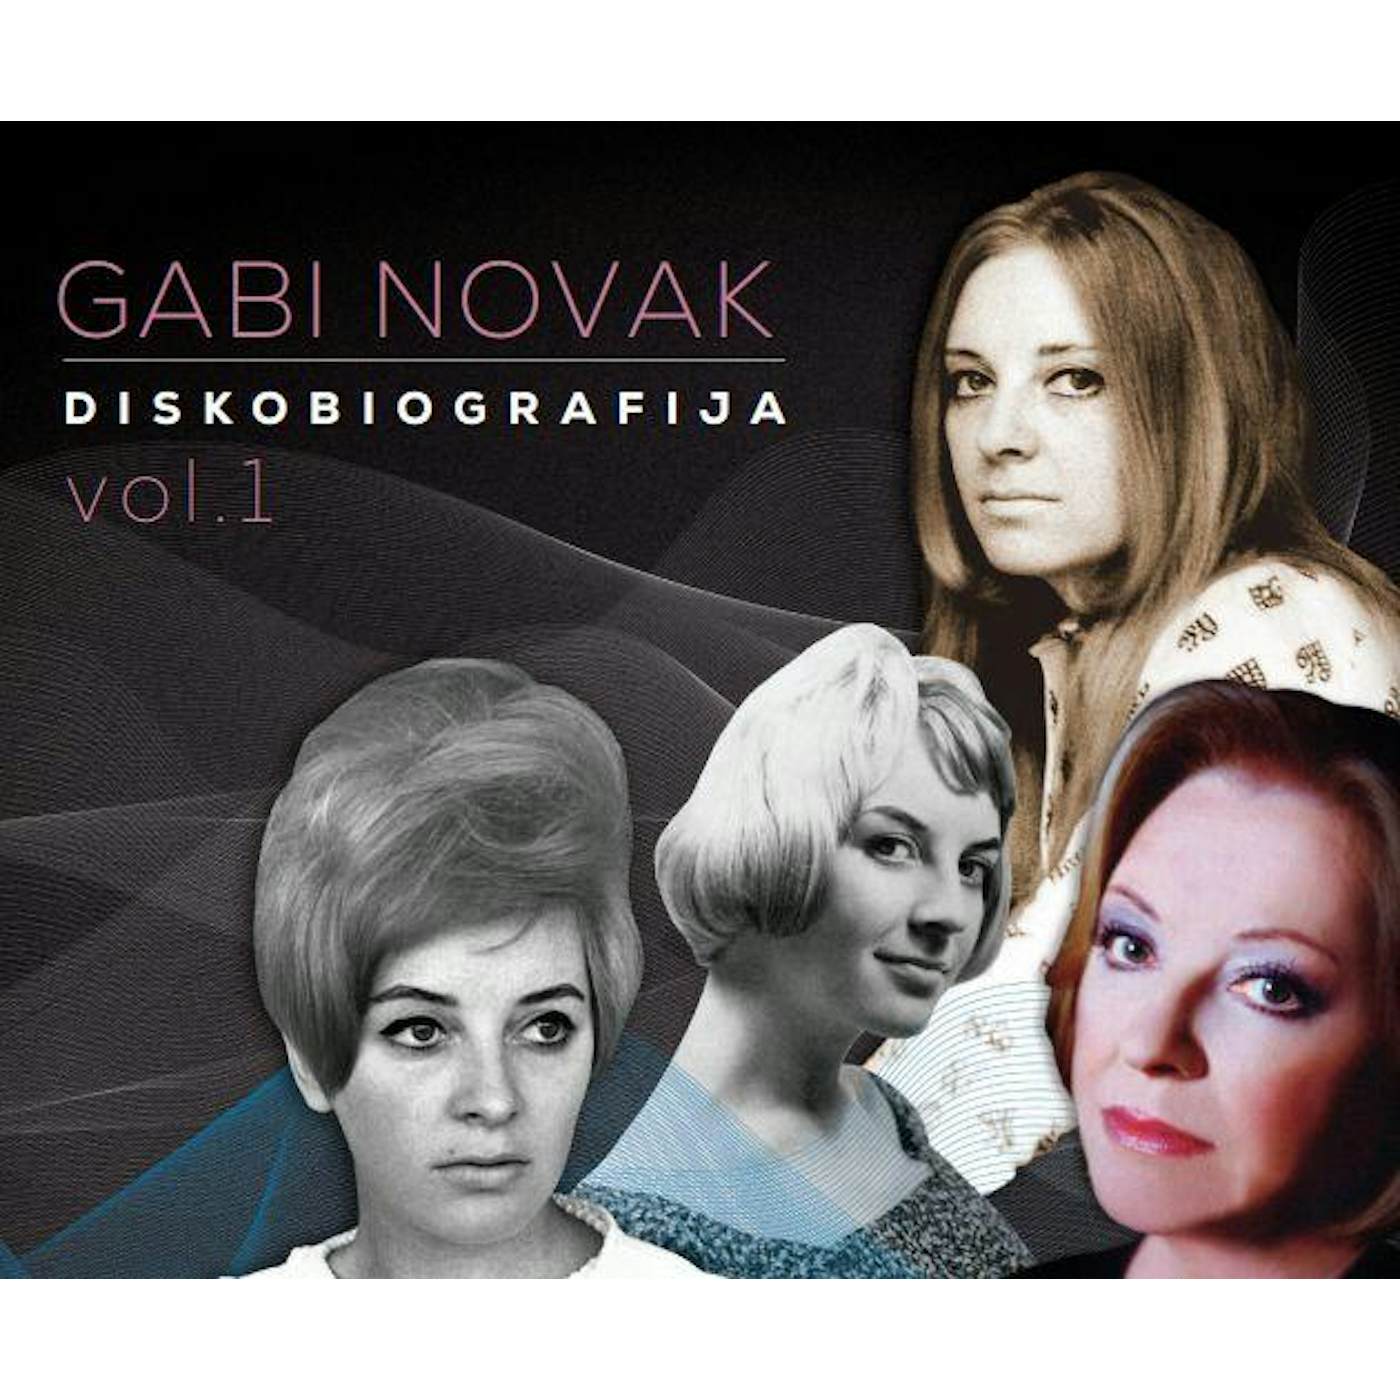 GABI NOVAK - DISKOBIOGRAFIJA VOL. 1